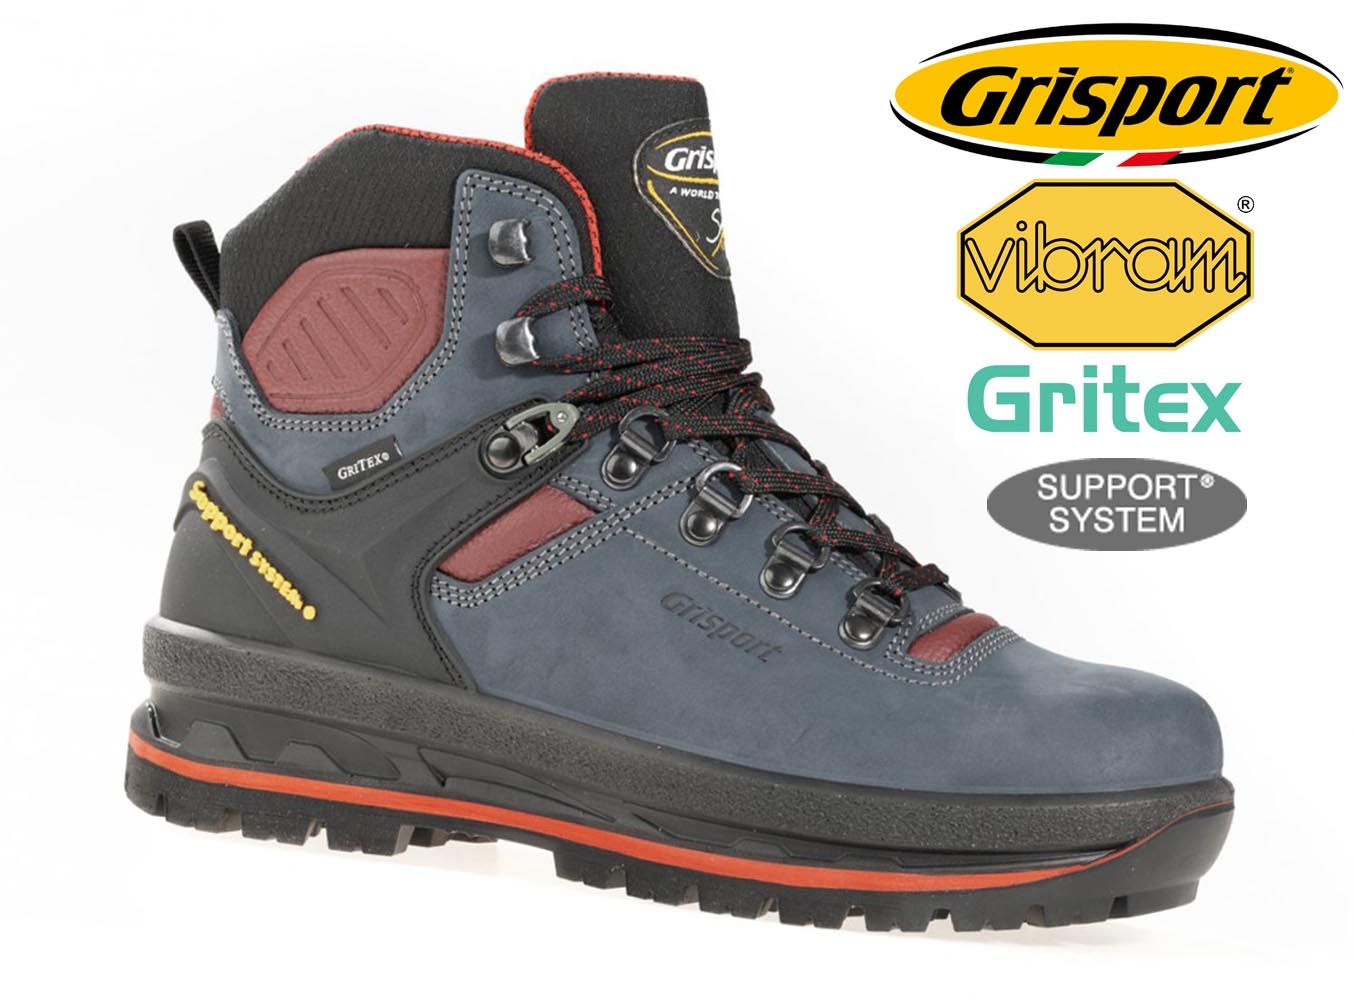 Grisport Glide 90 dámské trekové boty